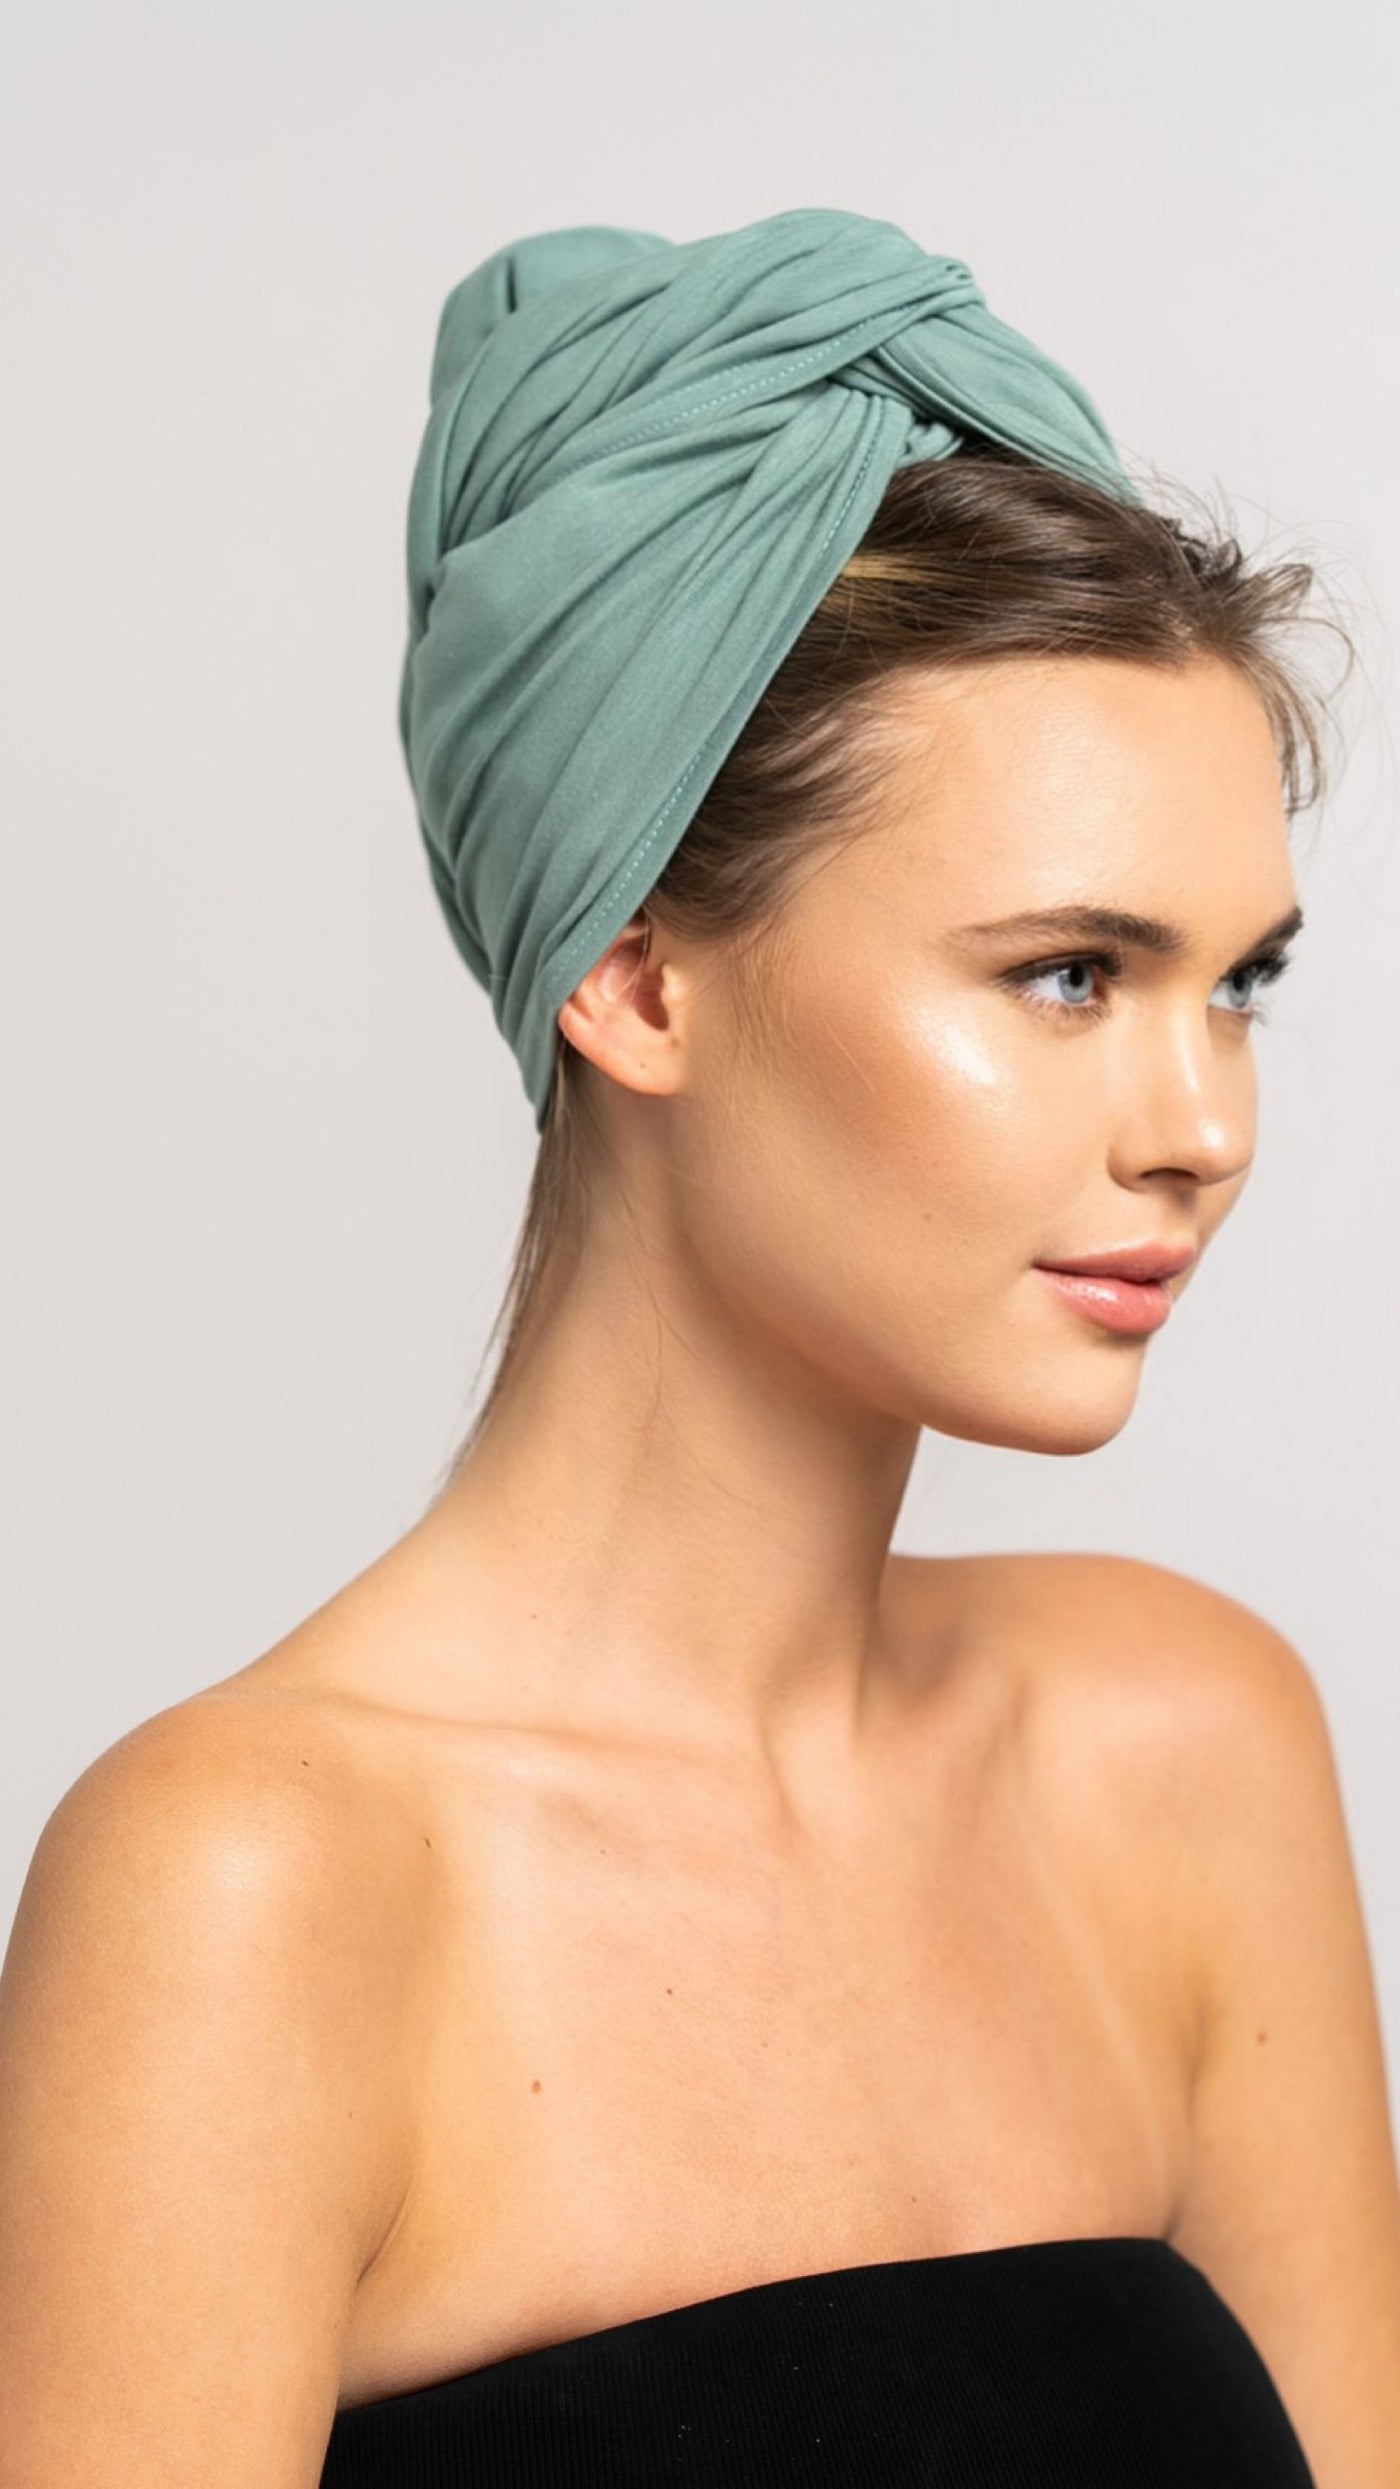 Seitliches Profil einer schönen Frau mit blonden Haaren, die ein mint grünes Bambus Haar Handtuch von Curly'N'Covered als Turban trägt